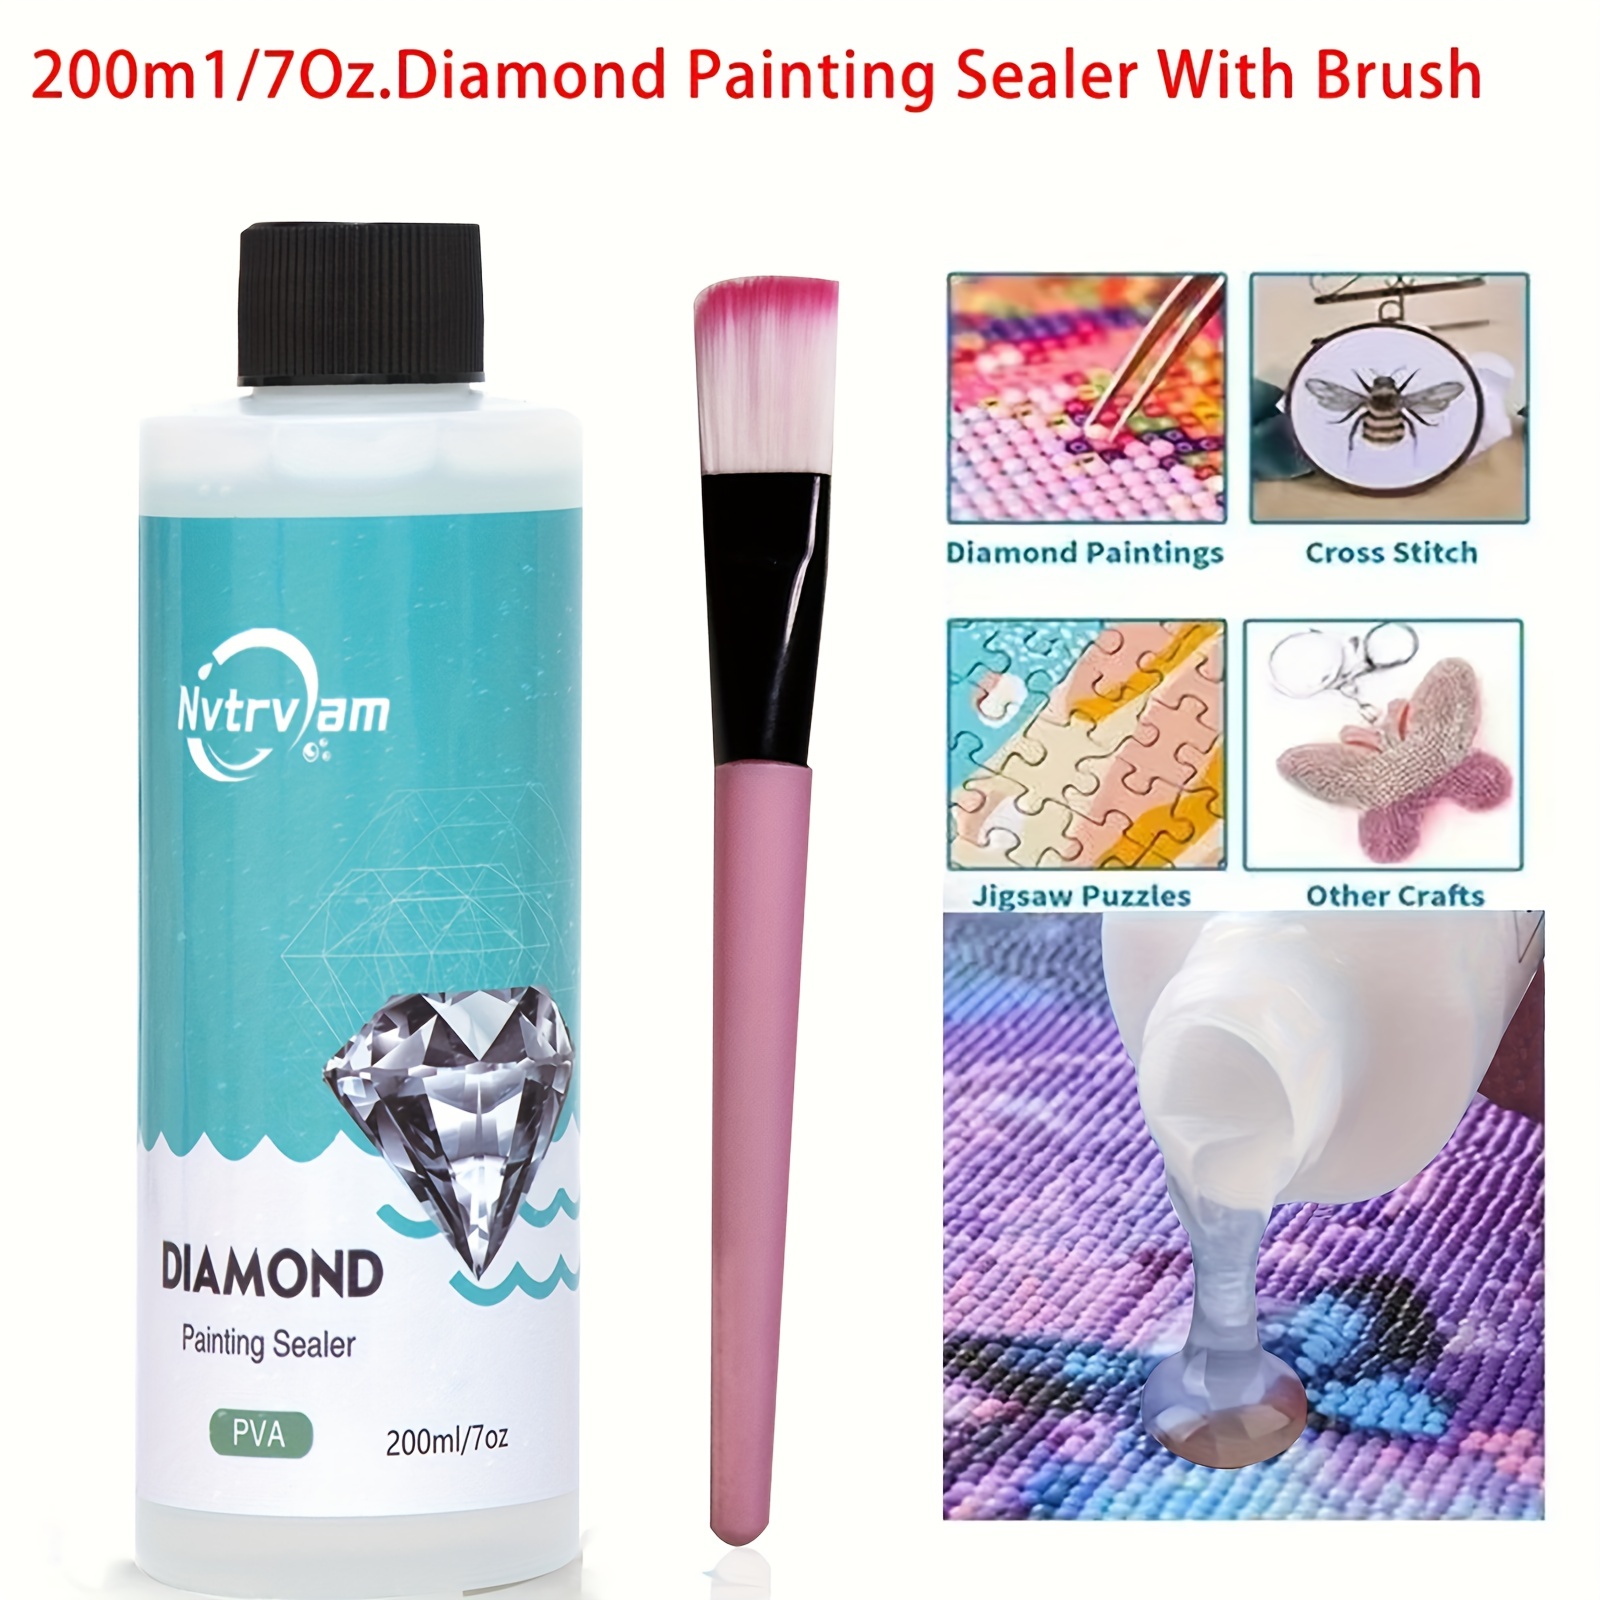 2pcs Diamond Painting Sealer 5D Diamond Painting Glue